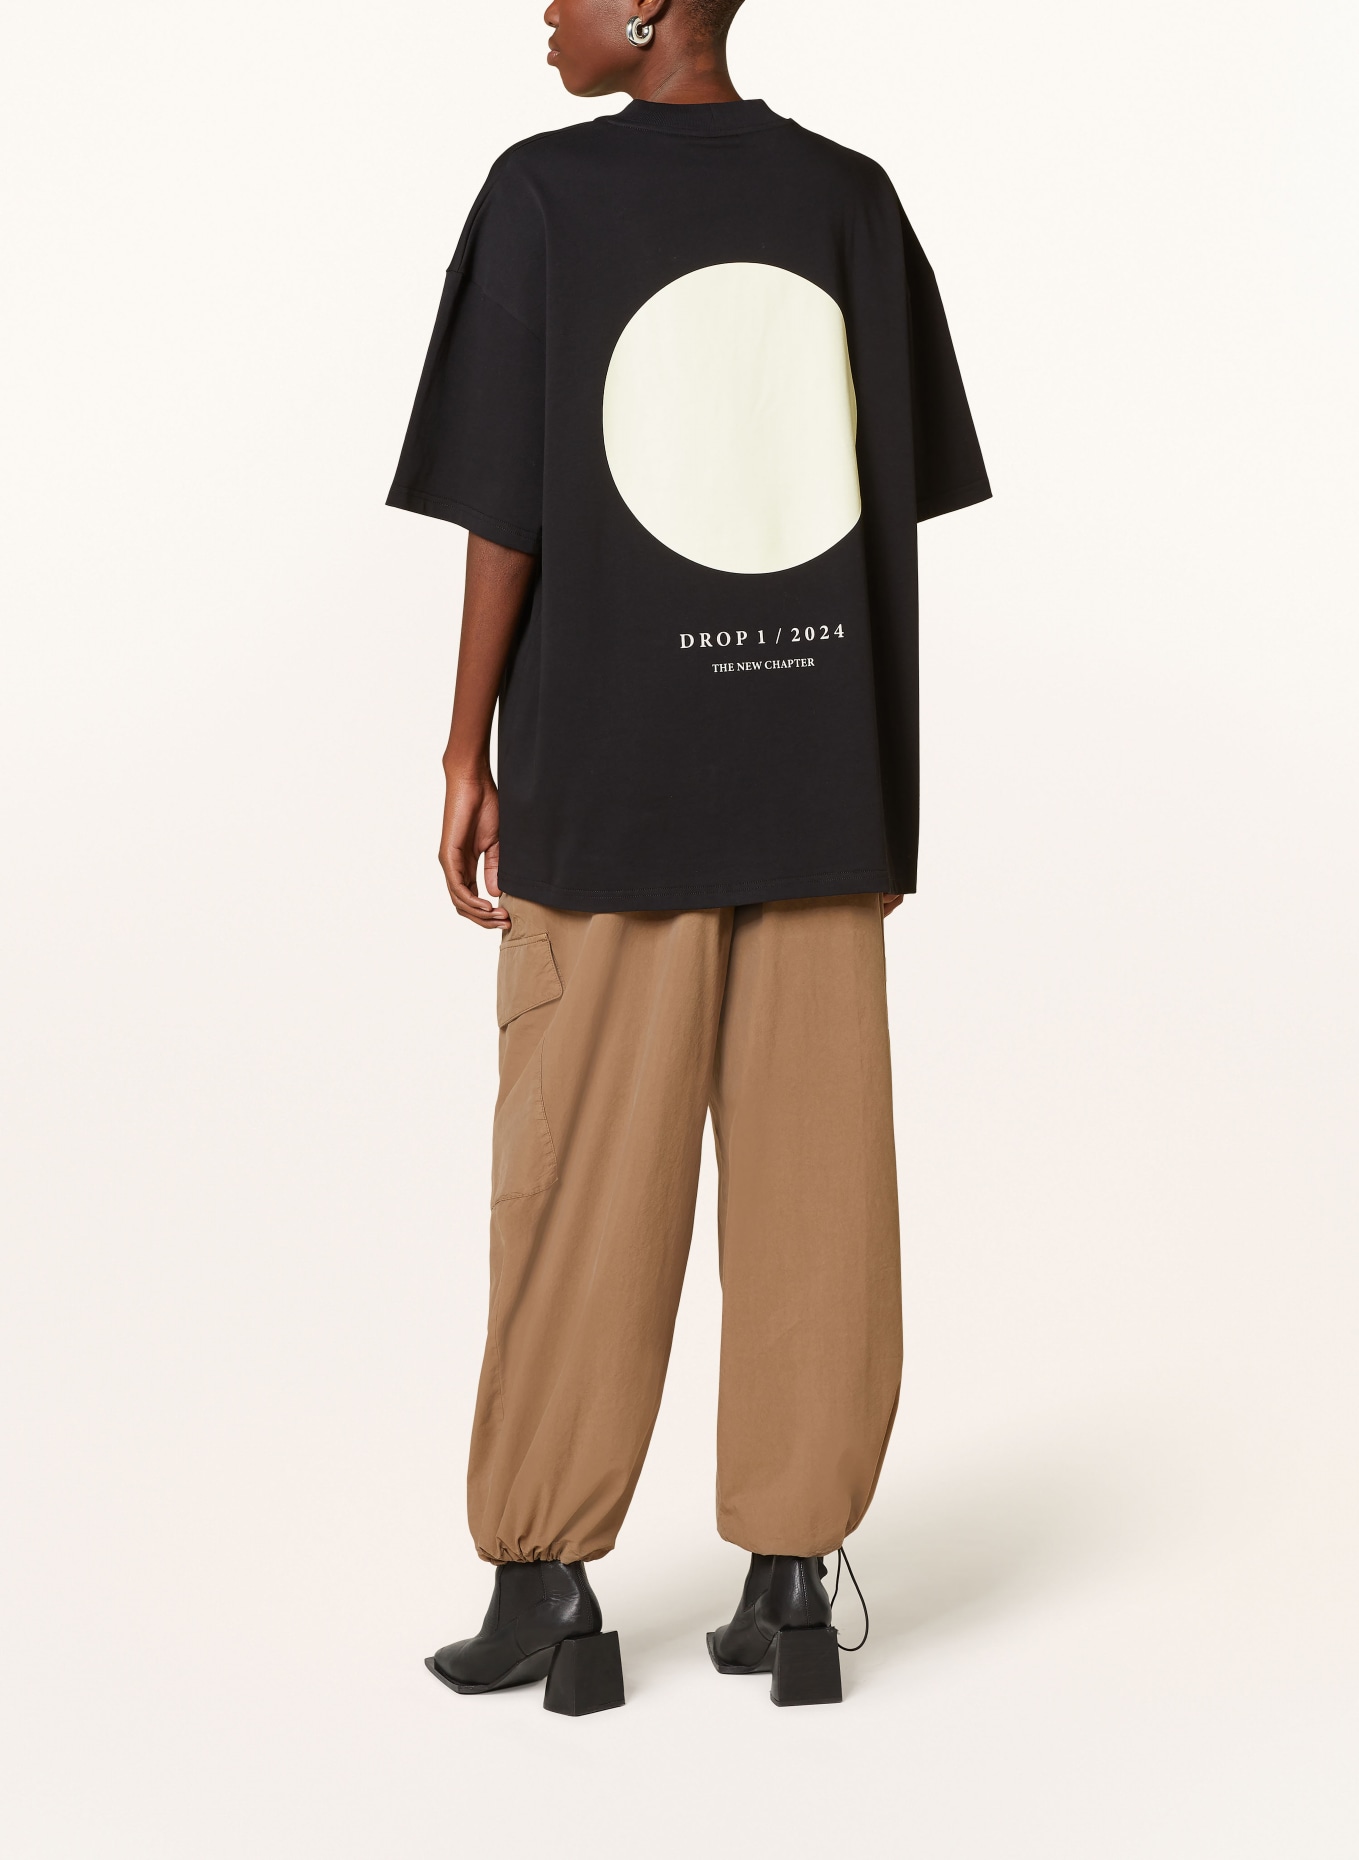 KARO KAUER Oversized shirt, Color: BLACK (Image 3)